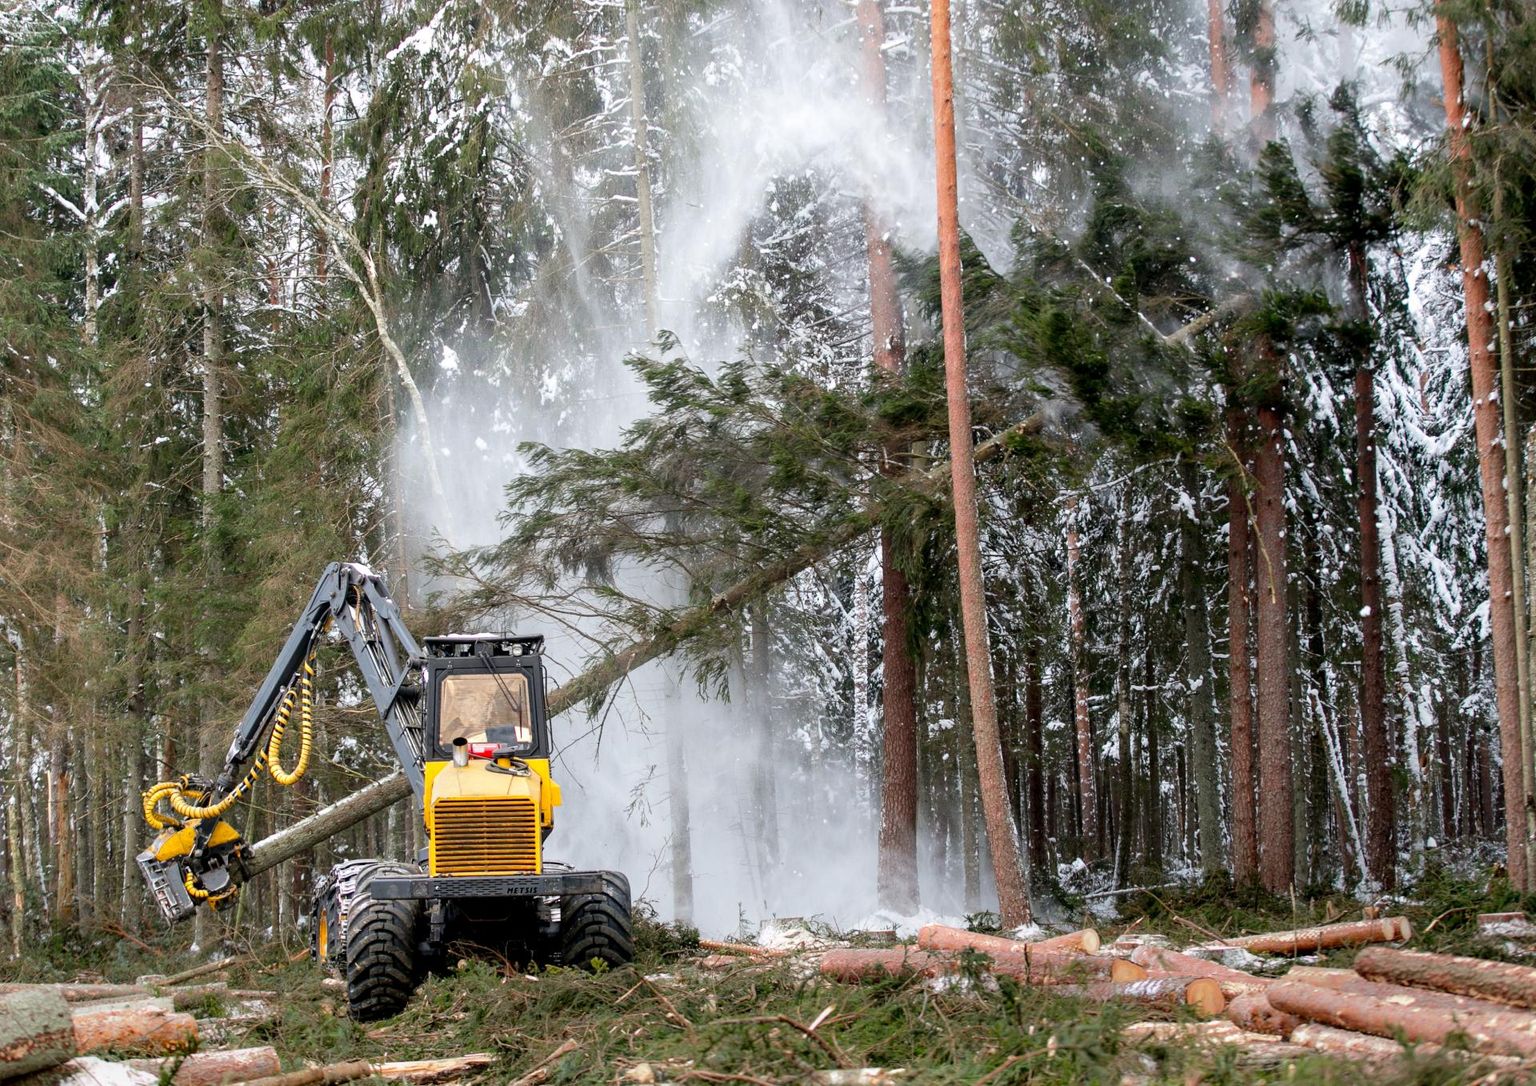 Kuna üraskikahjuga kuusepuud on vaja kiiresti maha võtta, on puiduturg üle uputatud odavast palgist. FOTO: Urmas Luik